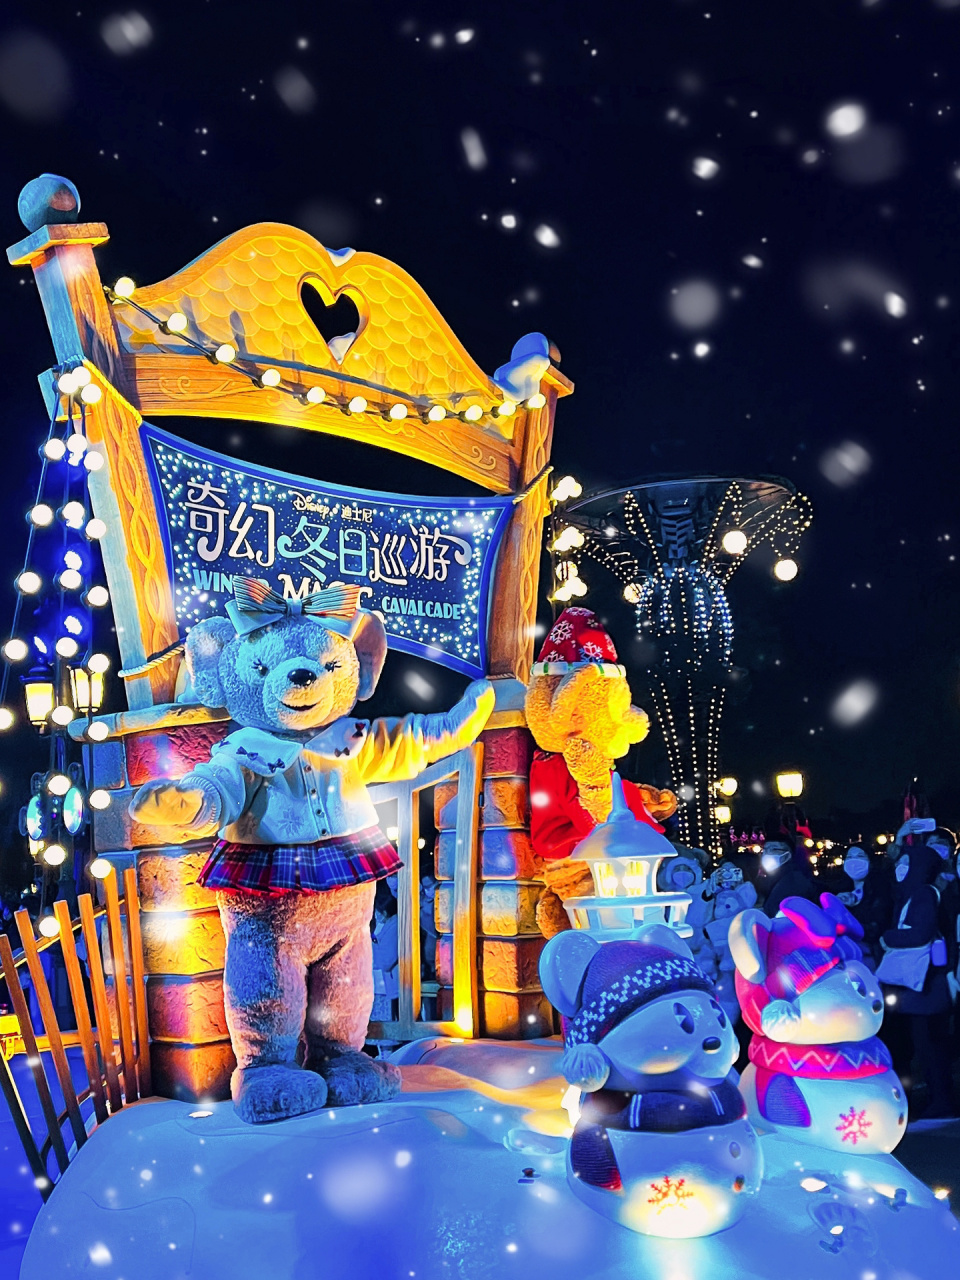 上海迪士尼乐园花车巡游 奇幻冬日巡游攻略 99当迪士尼的音乐从园区